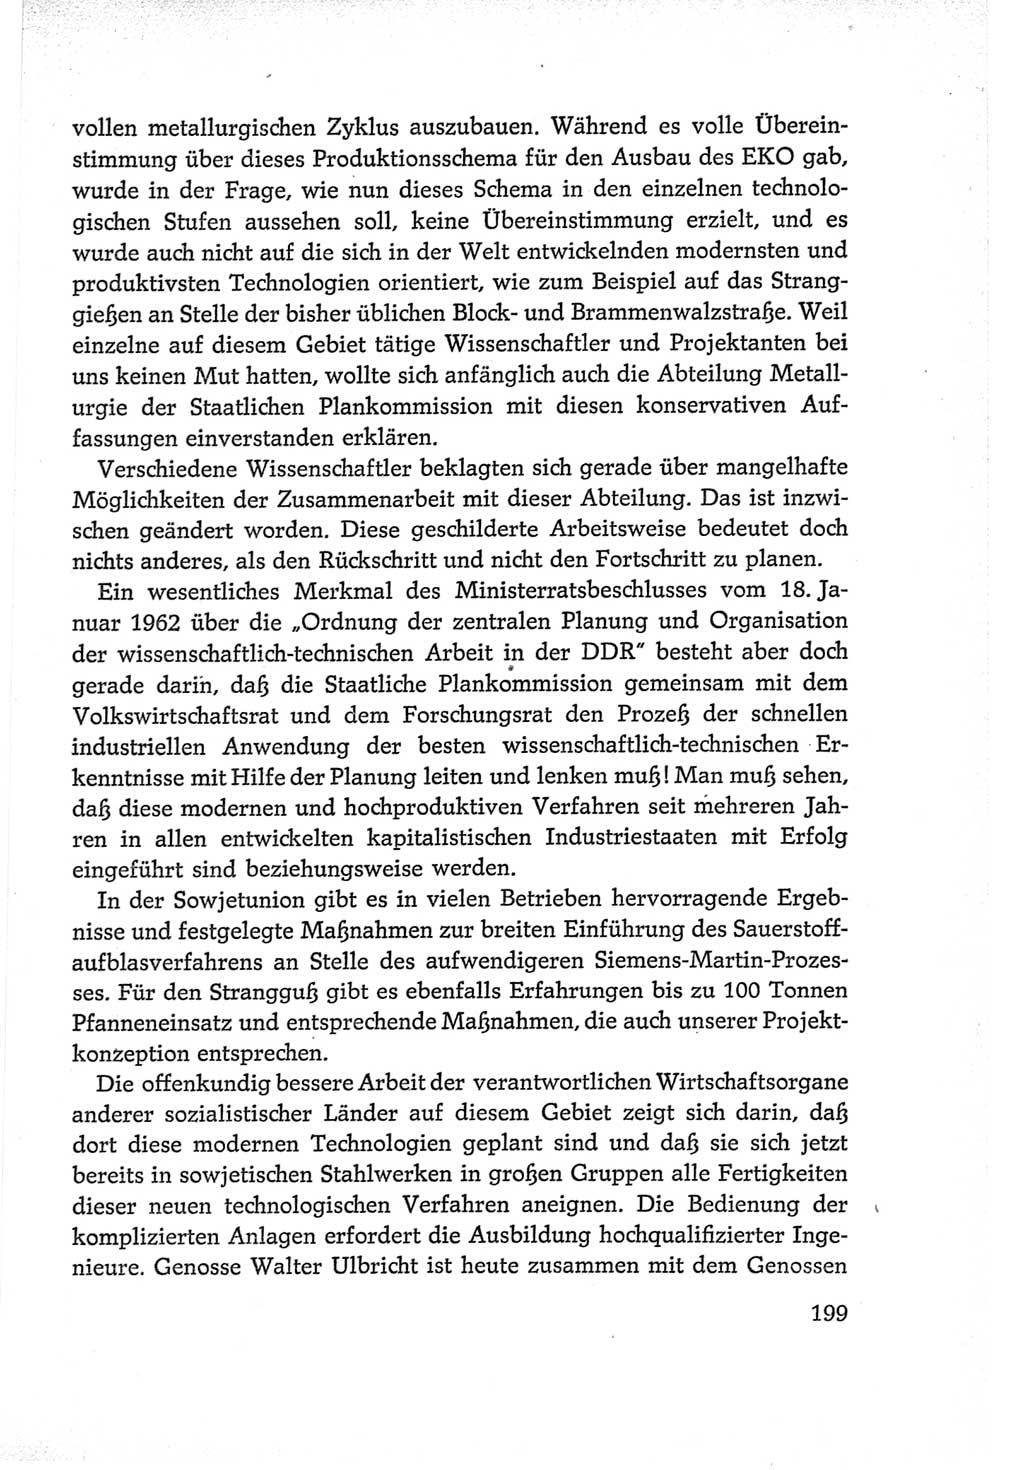 Protokoll der Verhandlungen des Ⅵ. Parteitages der Sozialistischen Einheitspartei Deutschlands (SED) [Deutsche Demokratische Republik (DDR)] 1963, Band Ⅱ, Seite 199 (Prot. Verh. Ⅵ. PT SED DDR 1963, Bd. Ⅱ, S. 199)